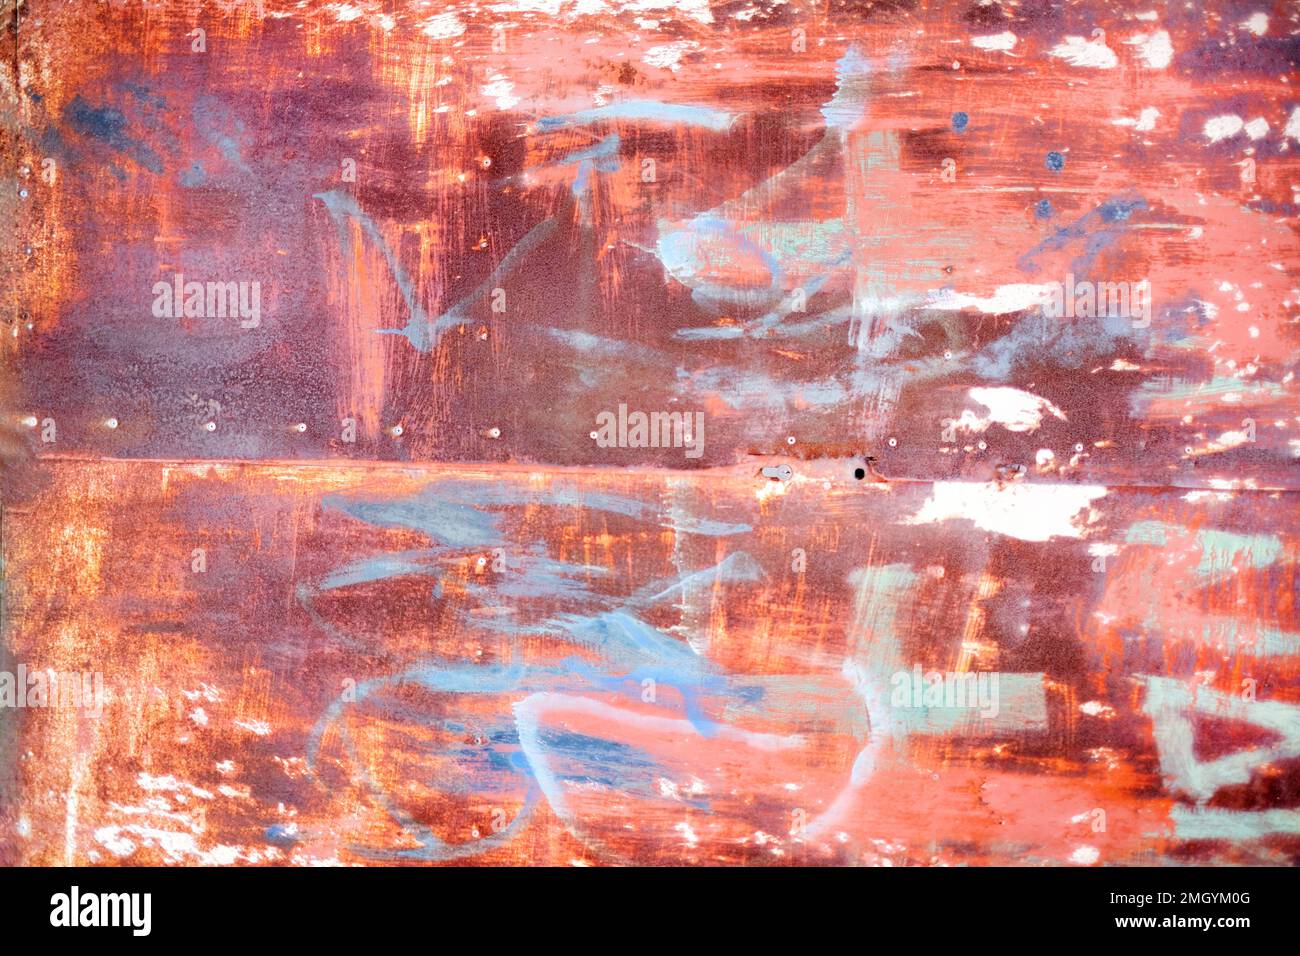 Ein Hintergrundbild eines rostigen Metallblechs. Das Blech ist abgenutzt und weist die Reste von Farbe mit einer insgesamt braunen Farbe auf Stockfoto